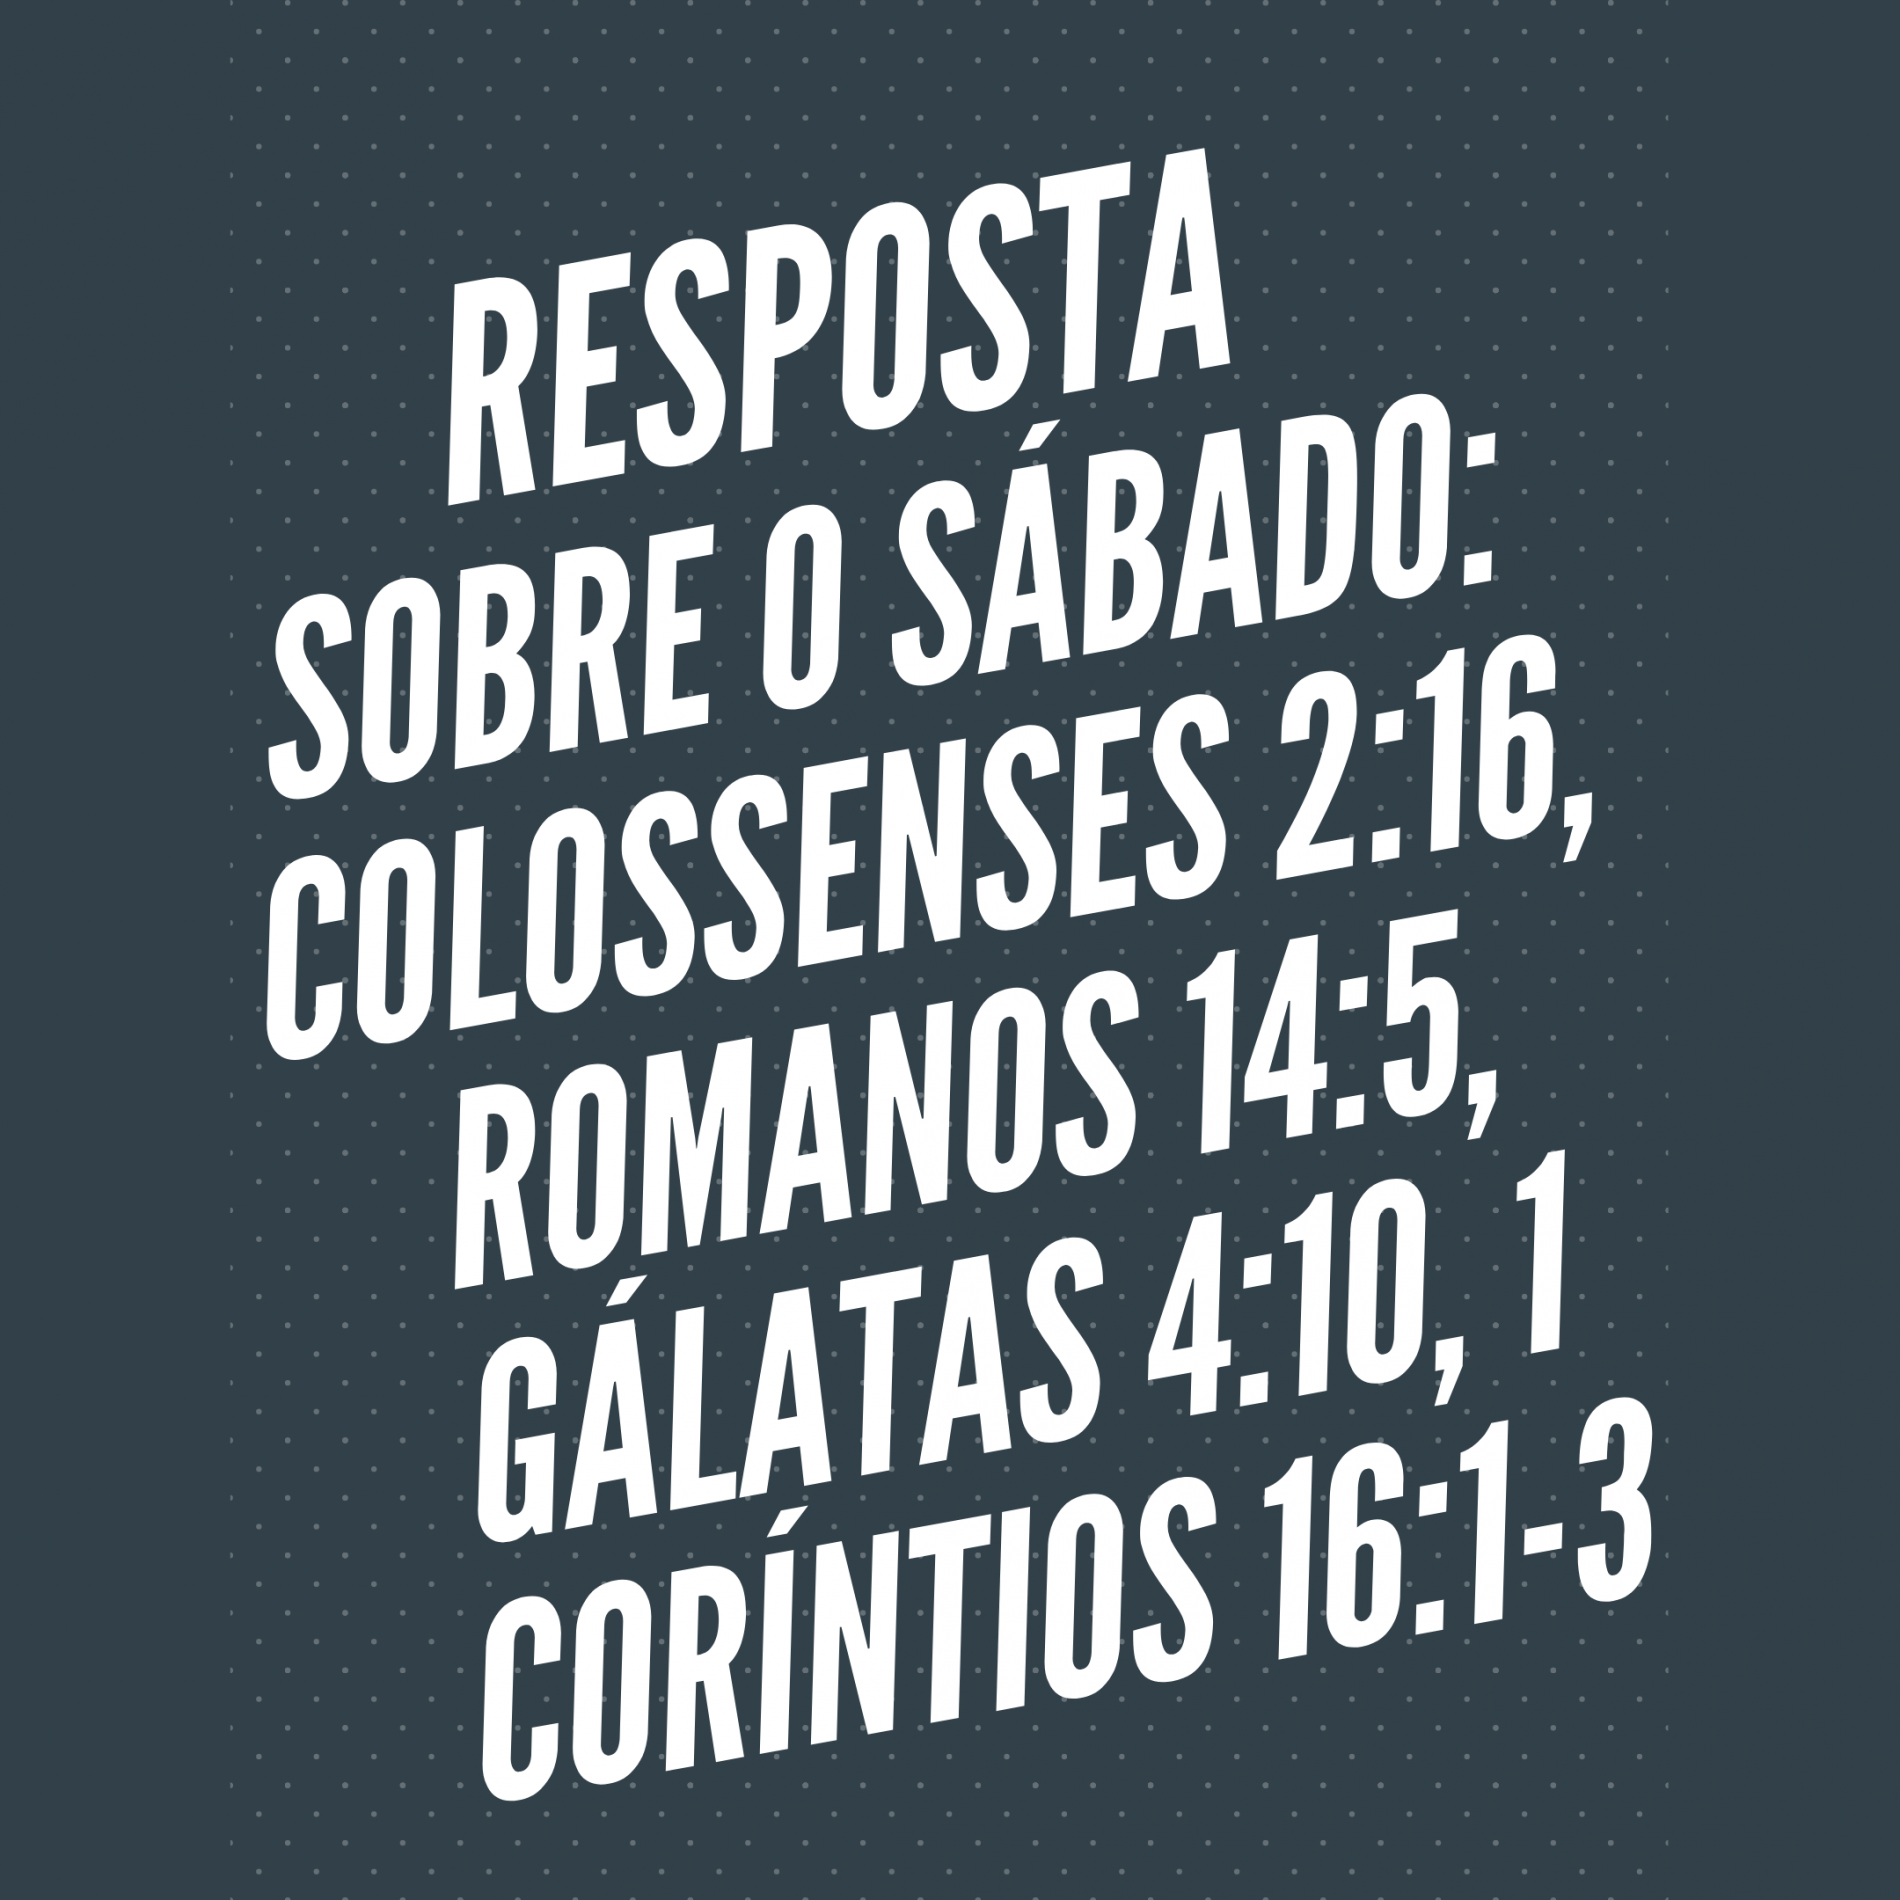 RESPOSTA Sobre o SÁBADO (2): Colossenses 2:16, Romanos 14:5, Gálatas 4:10, 1 Coríntios 16:1-3